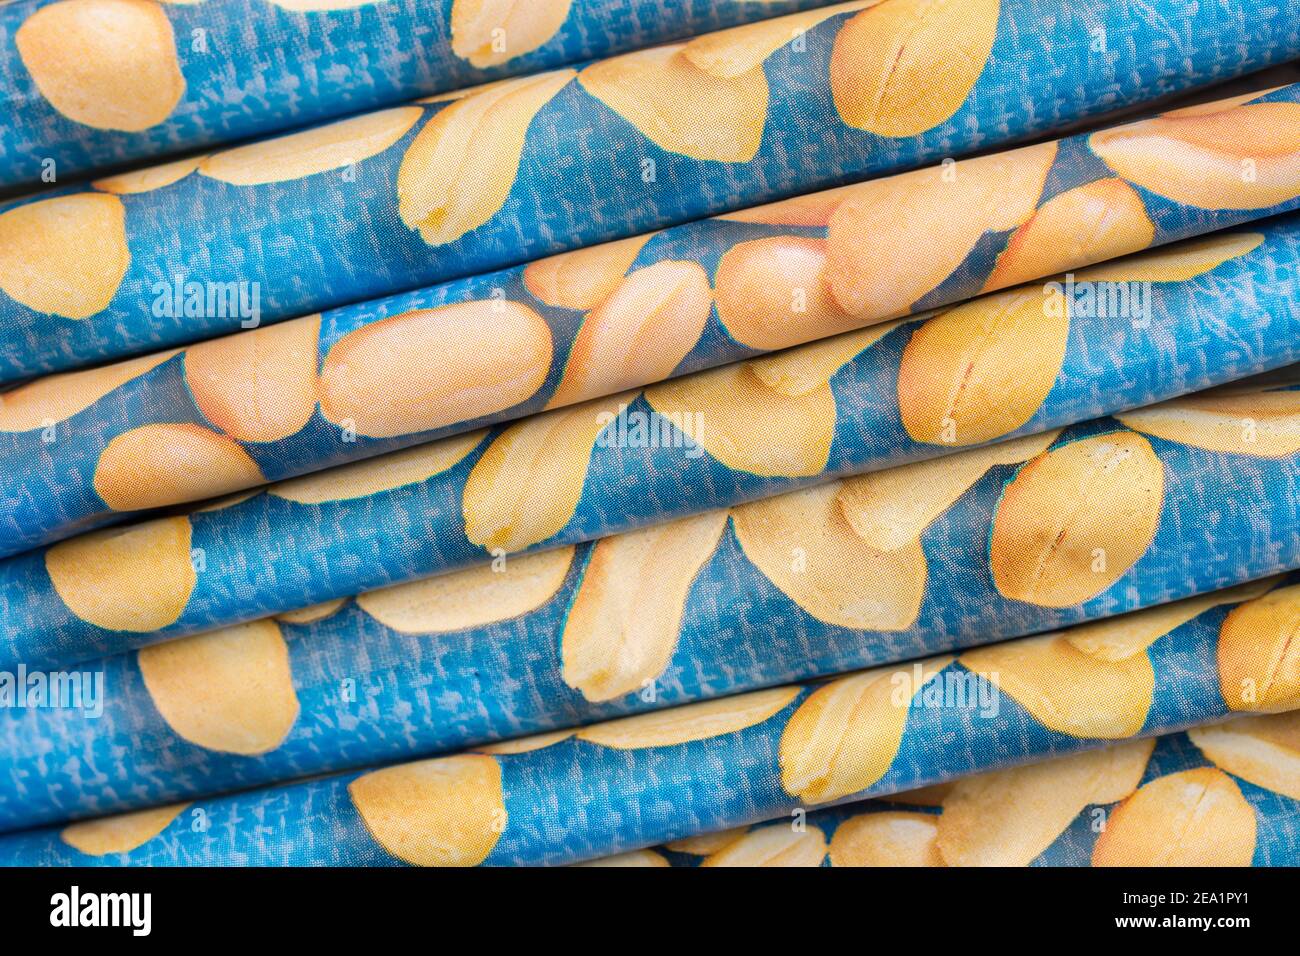 Primo piano sui bordi delle confezioni di arachidi salate ASDA. Riassunto per allergie alle arachidi, anafilassi, alimenti confezionati, Foto Stock